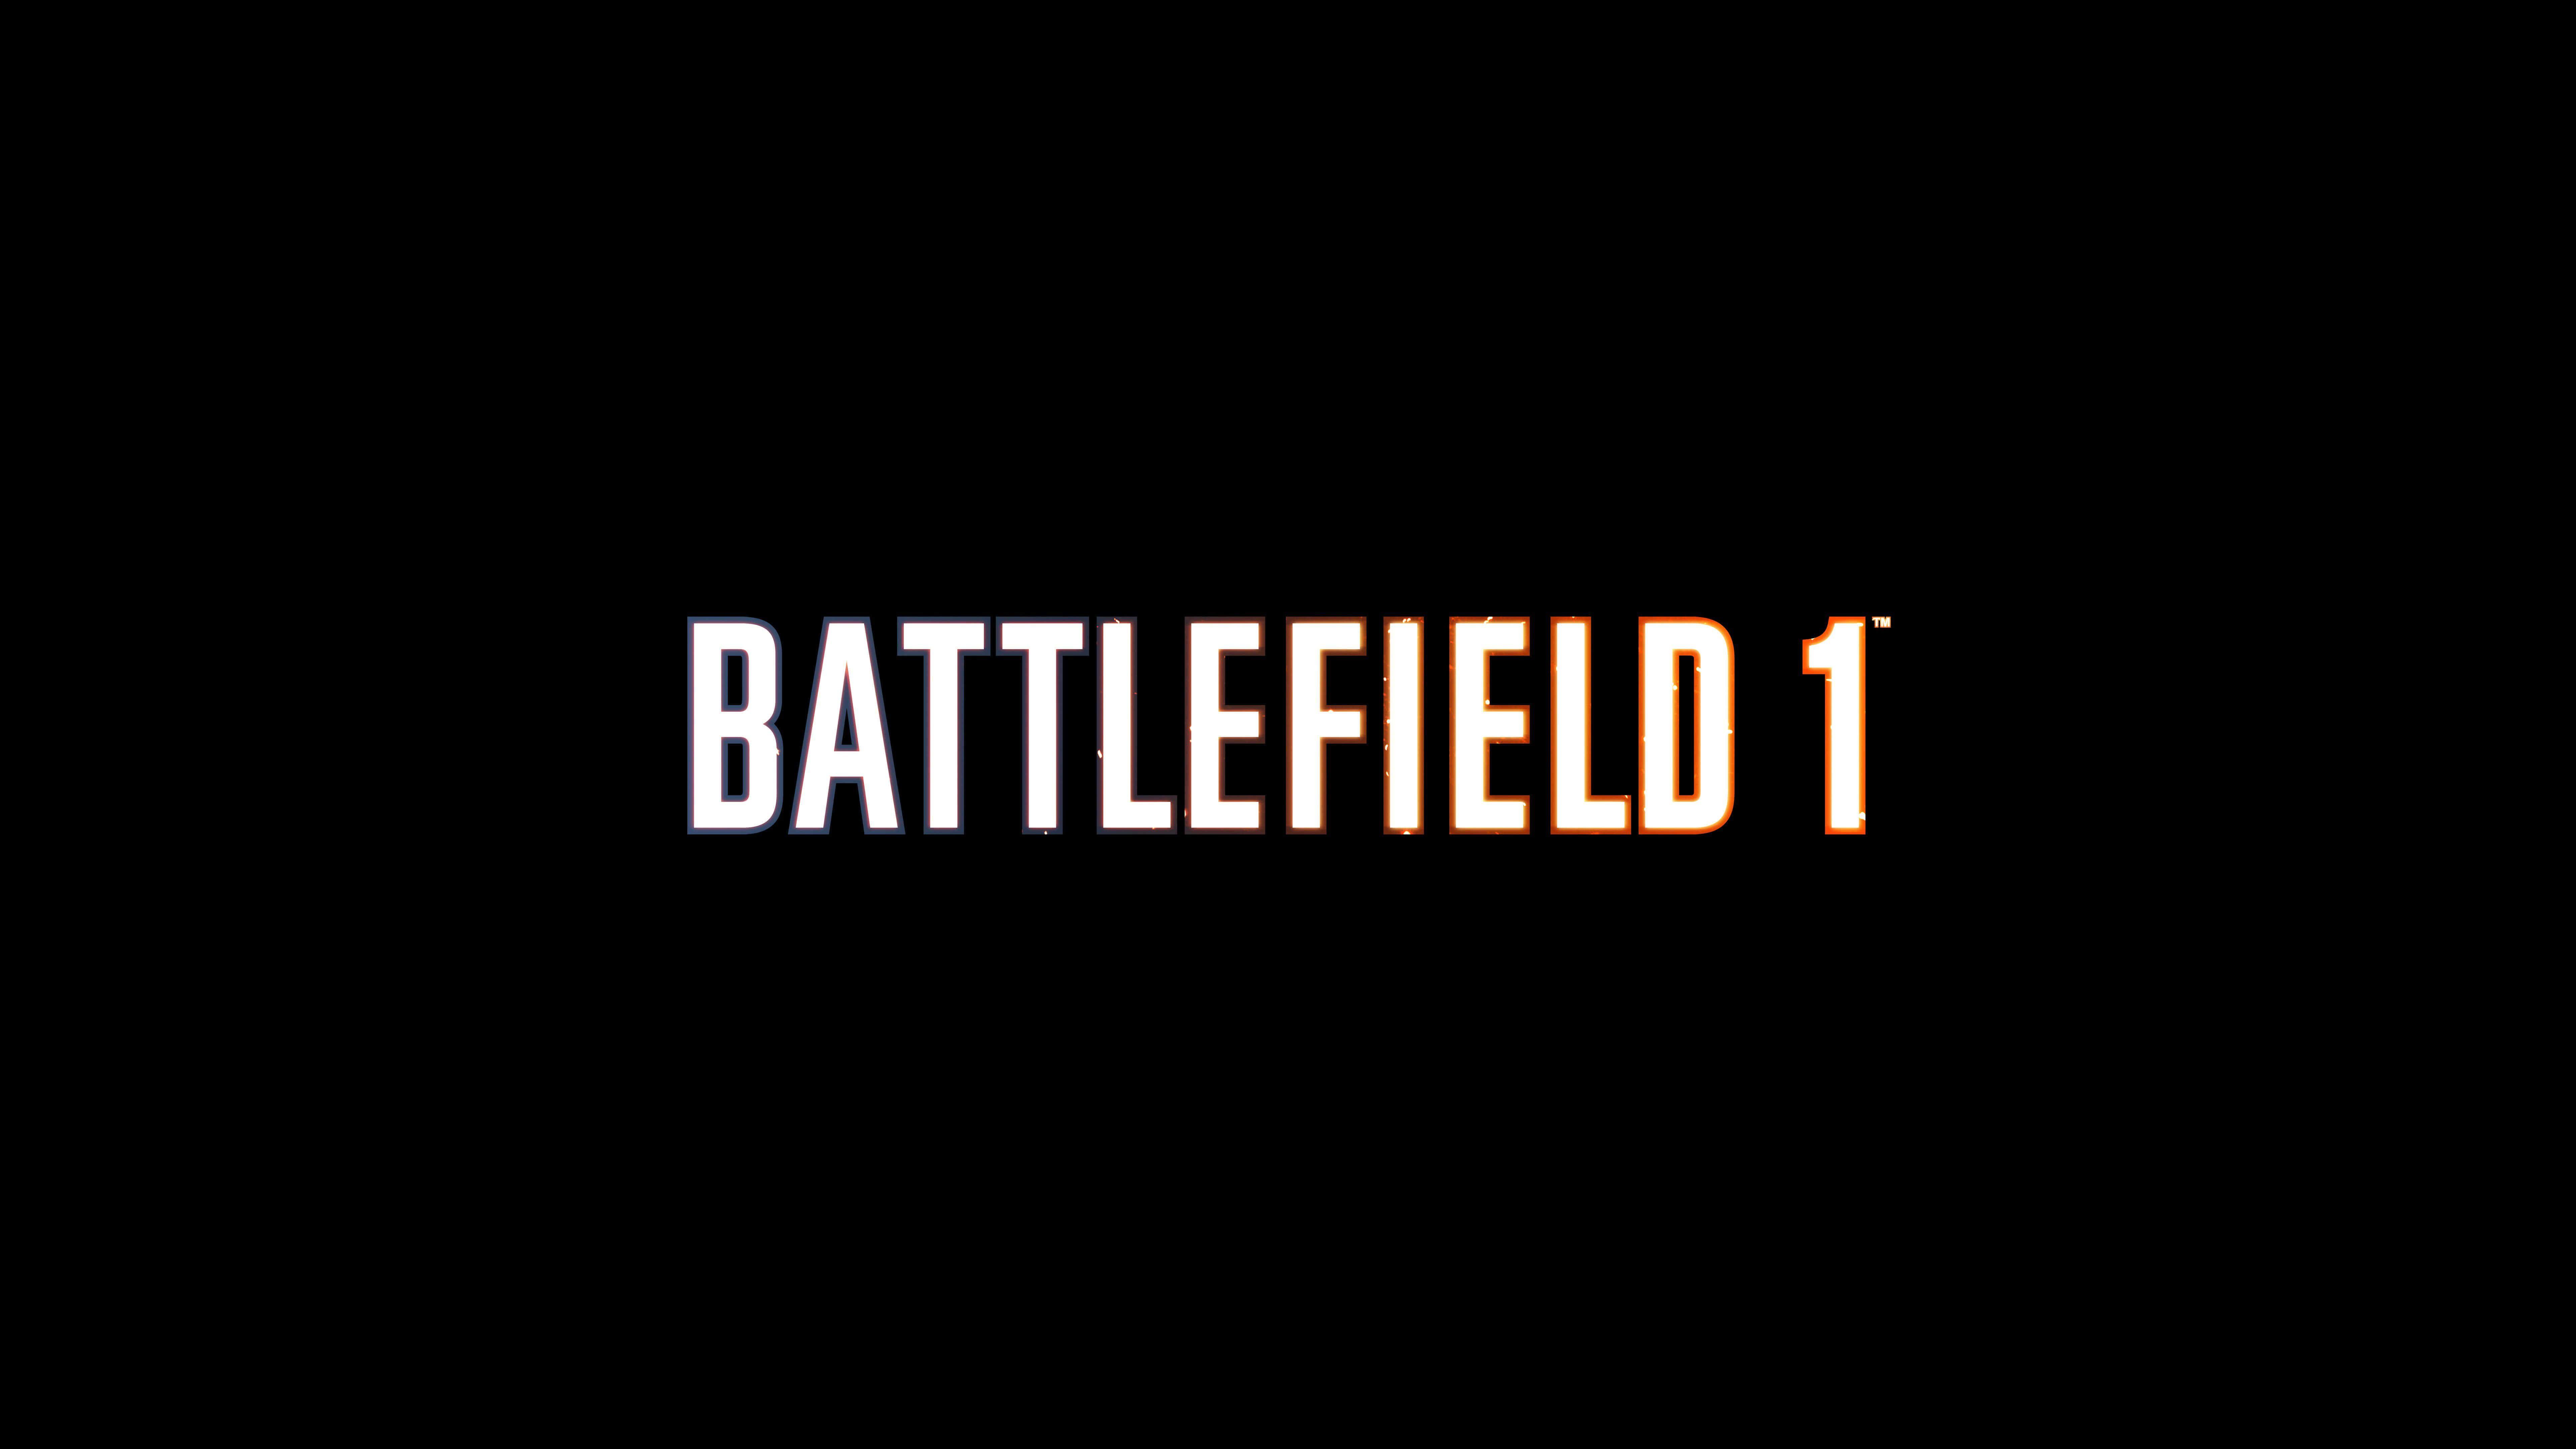 Battlefield Logo - Battlefield 1 Logo UHD 8K Wallpaper | Pixelz